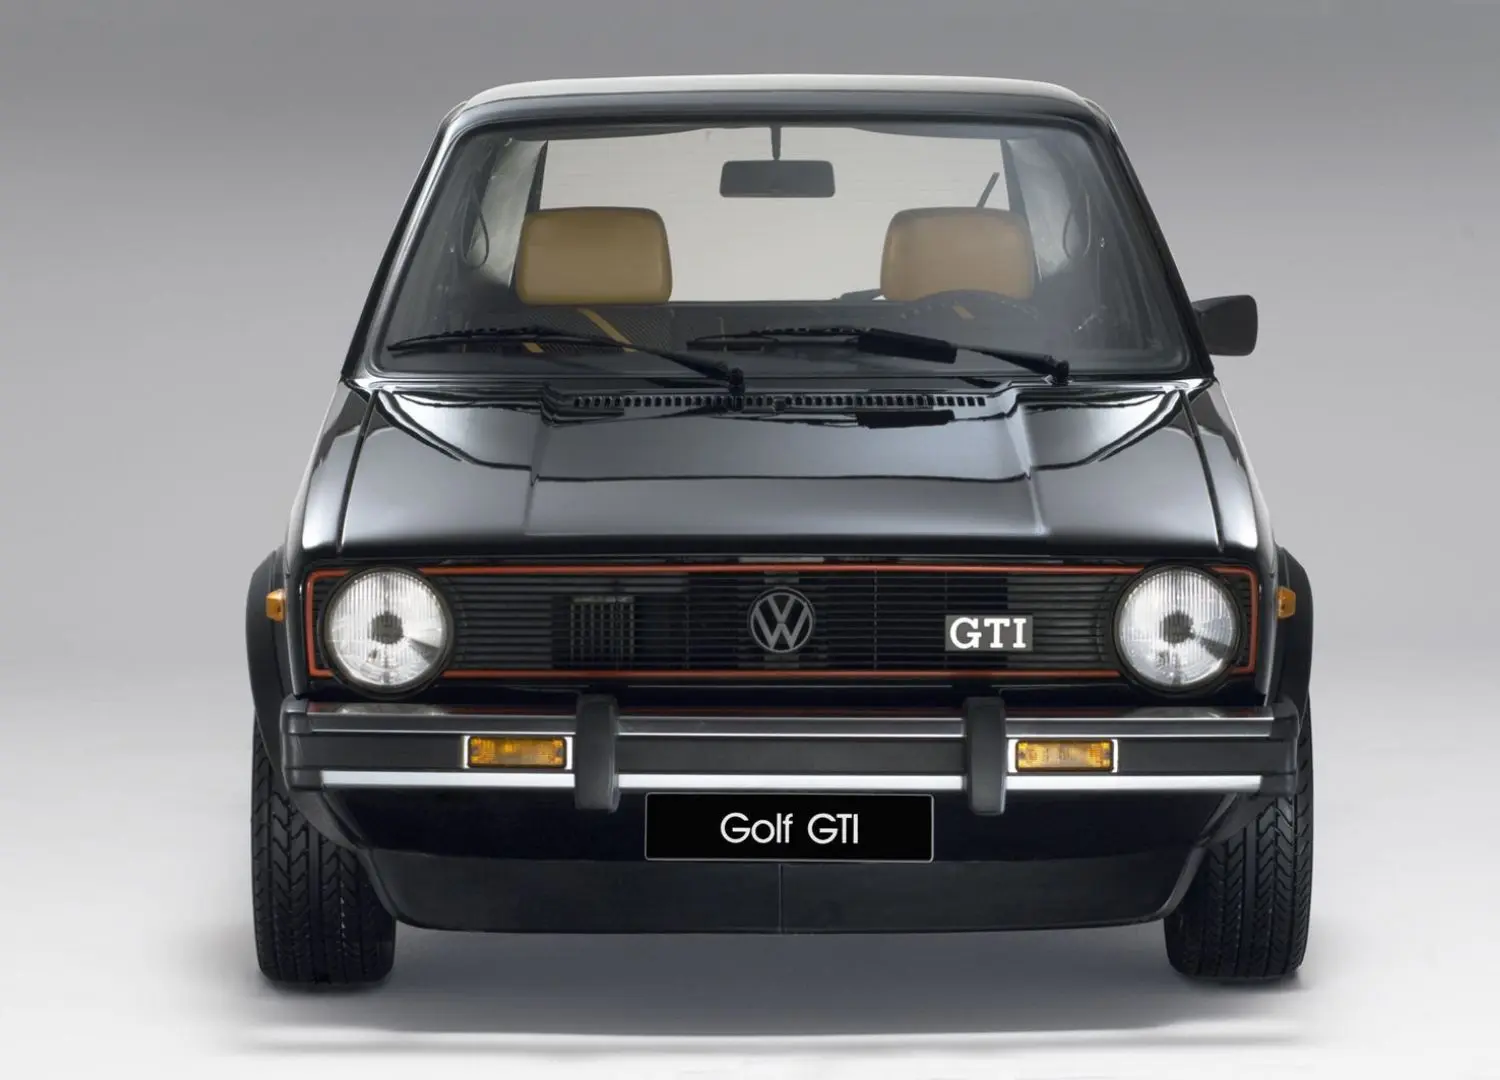 VQ Golf GTI _ 10 most impressive Giorgetto Giugiaro designs